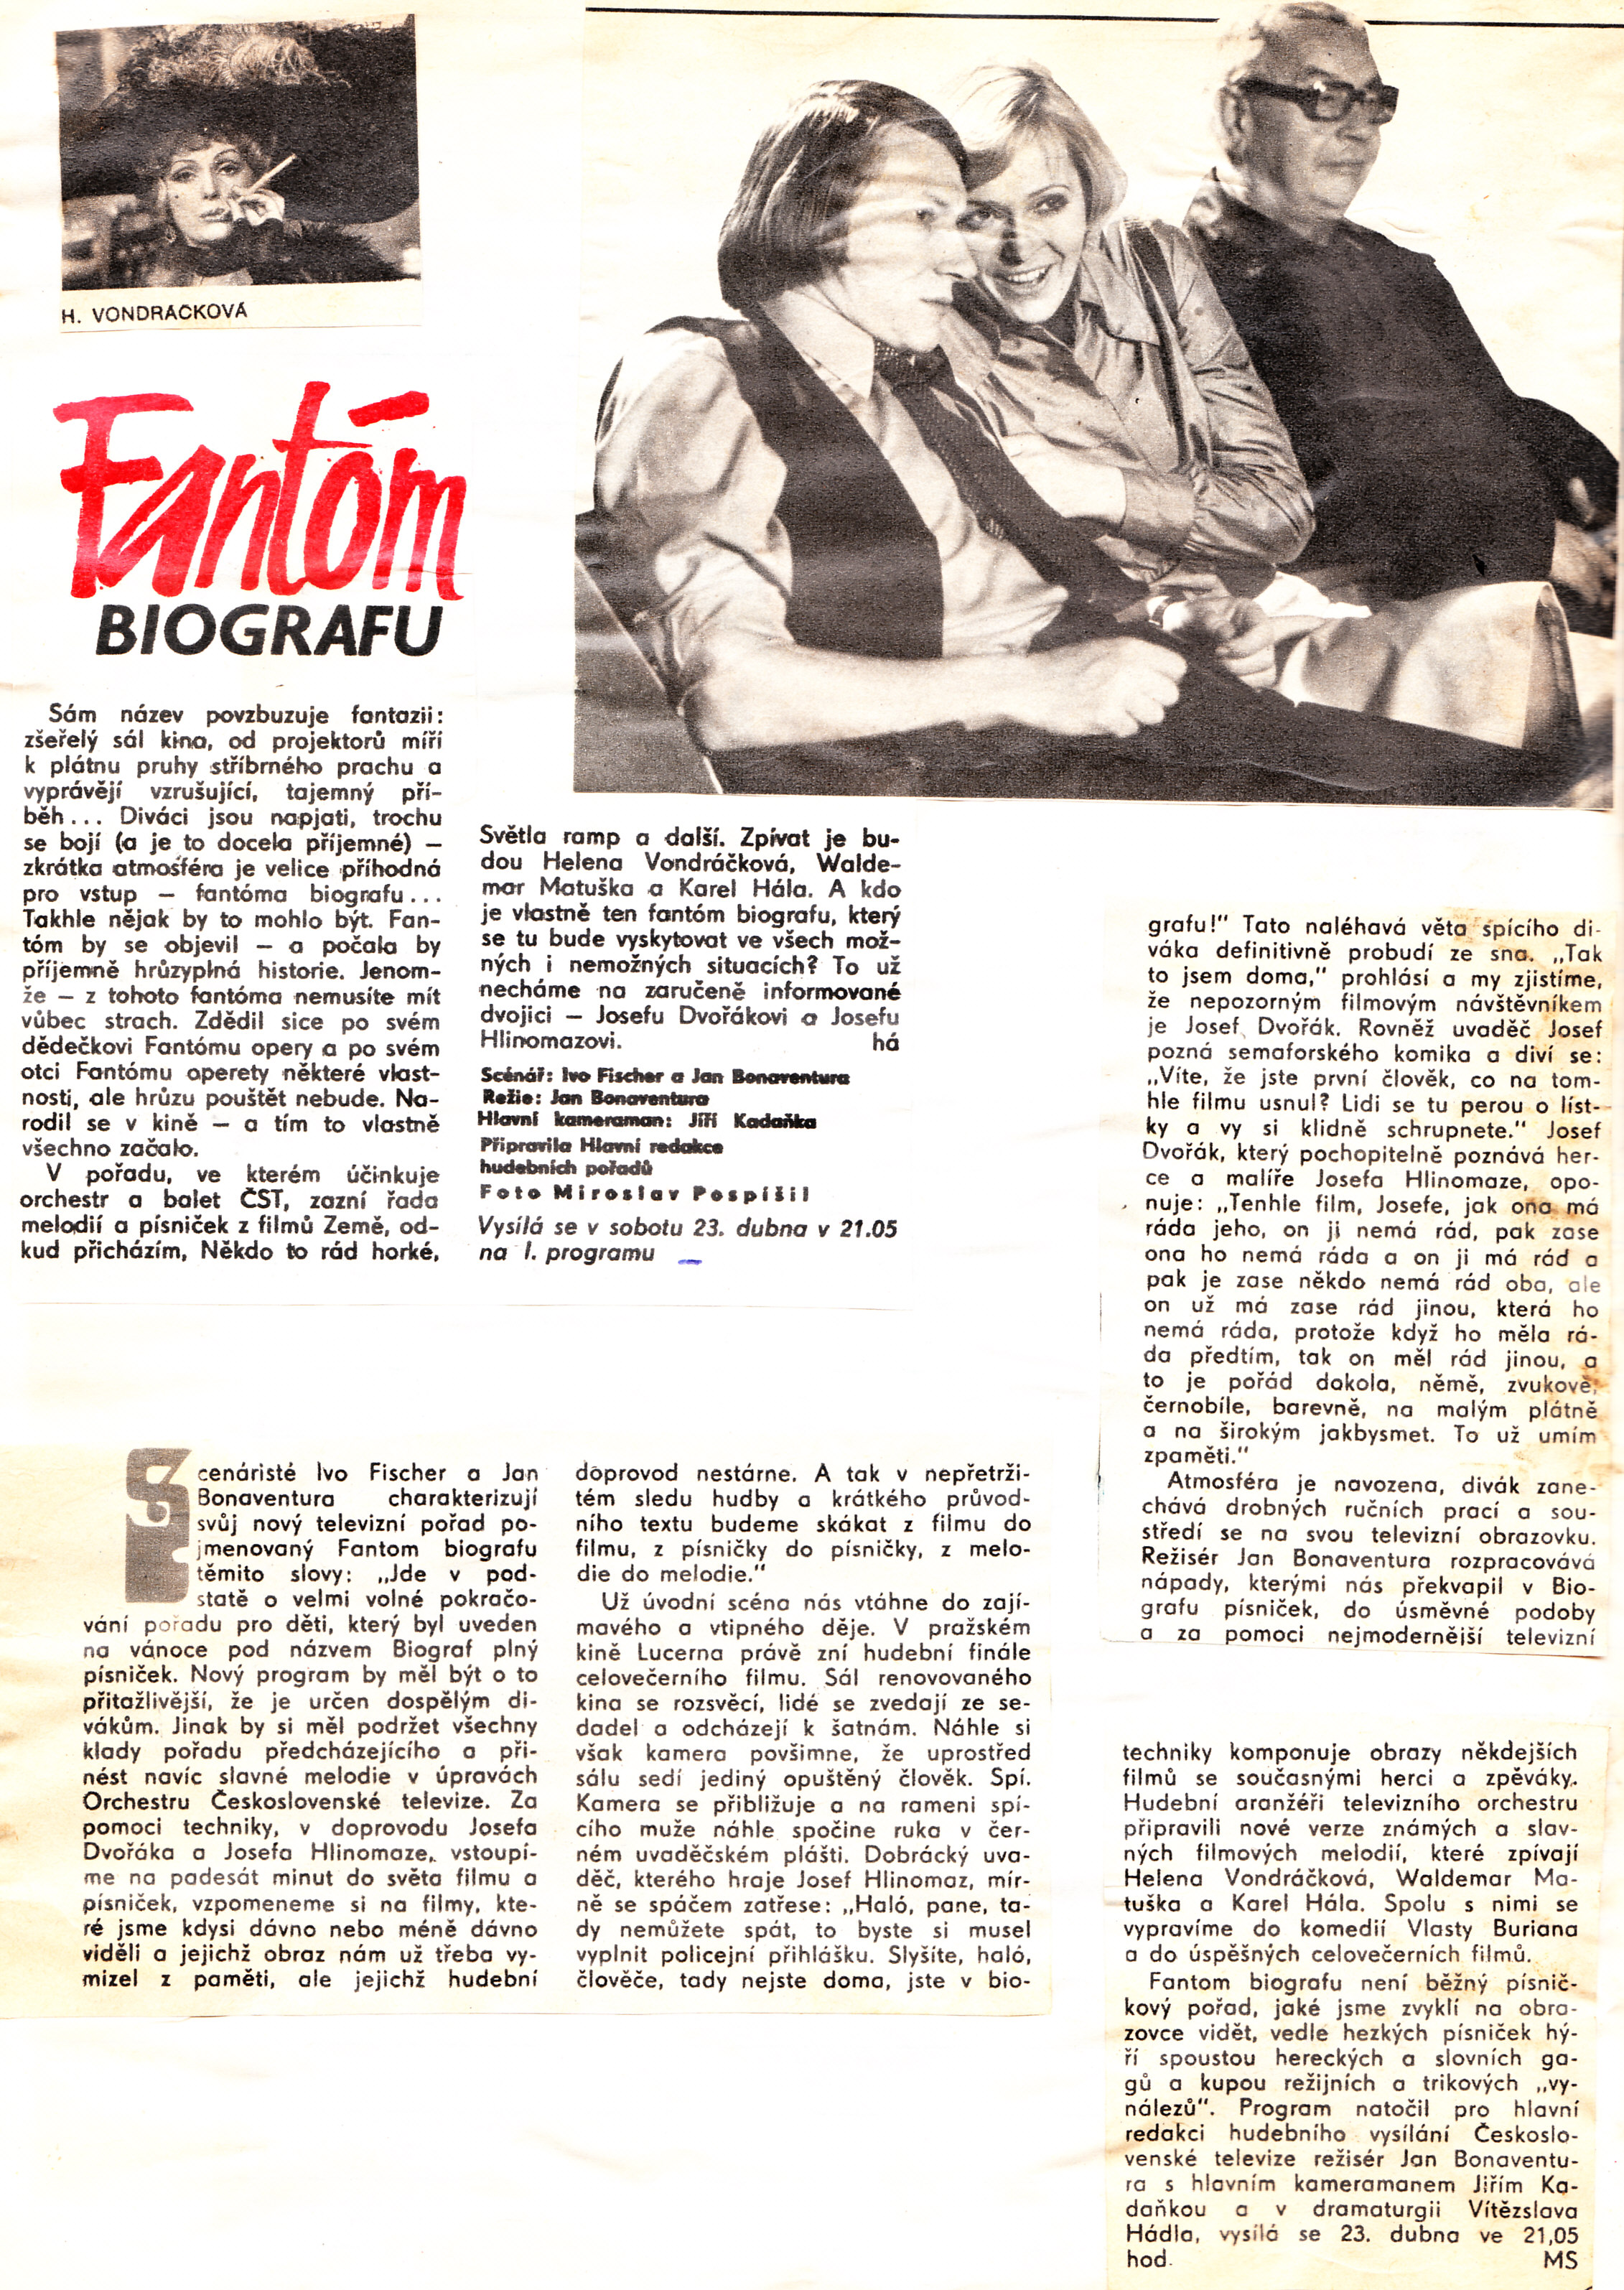 1977-4 TV Fantom biografu, Československá televize.jpg